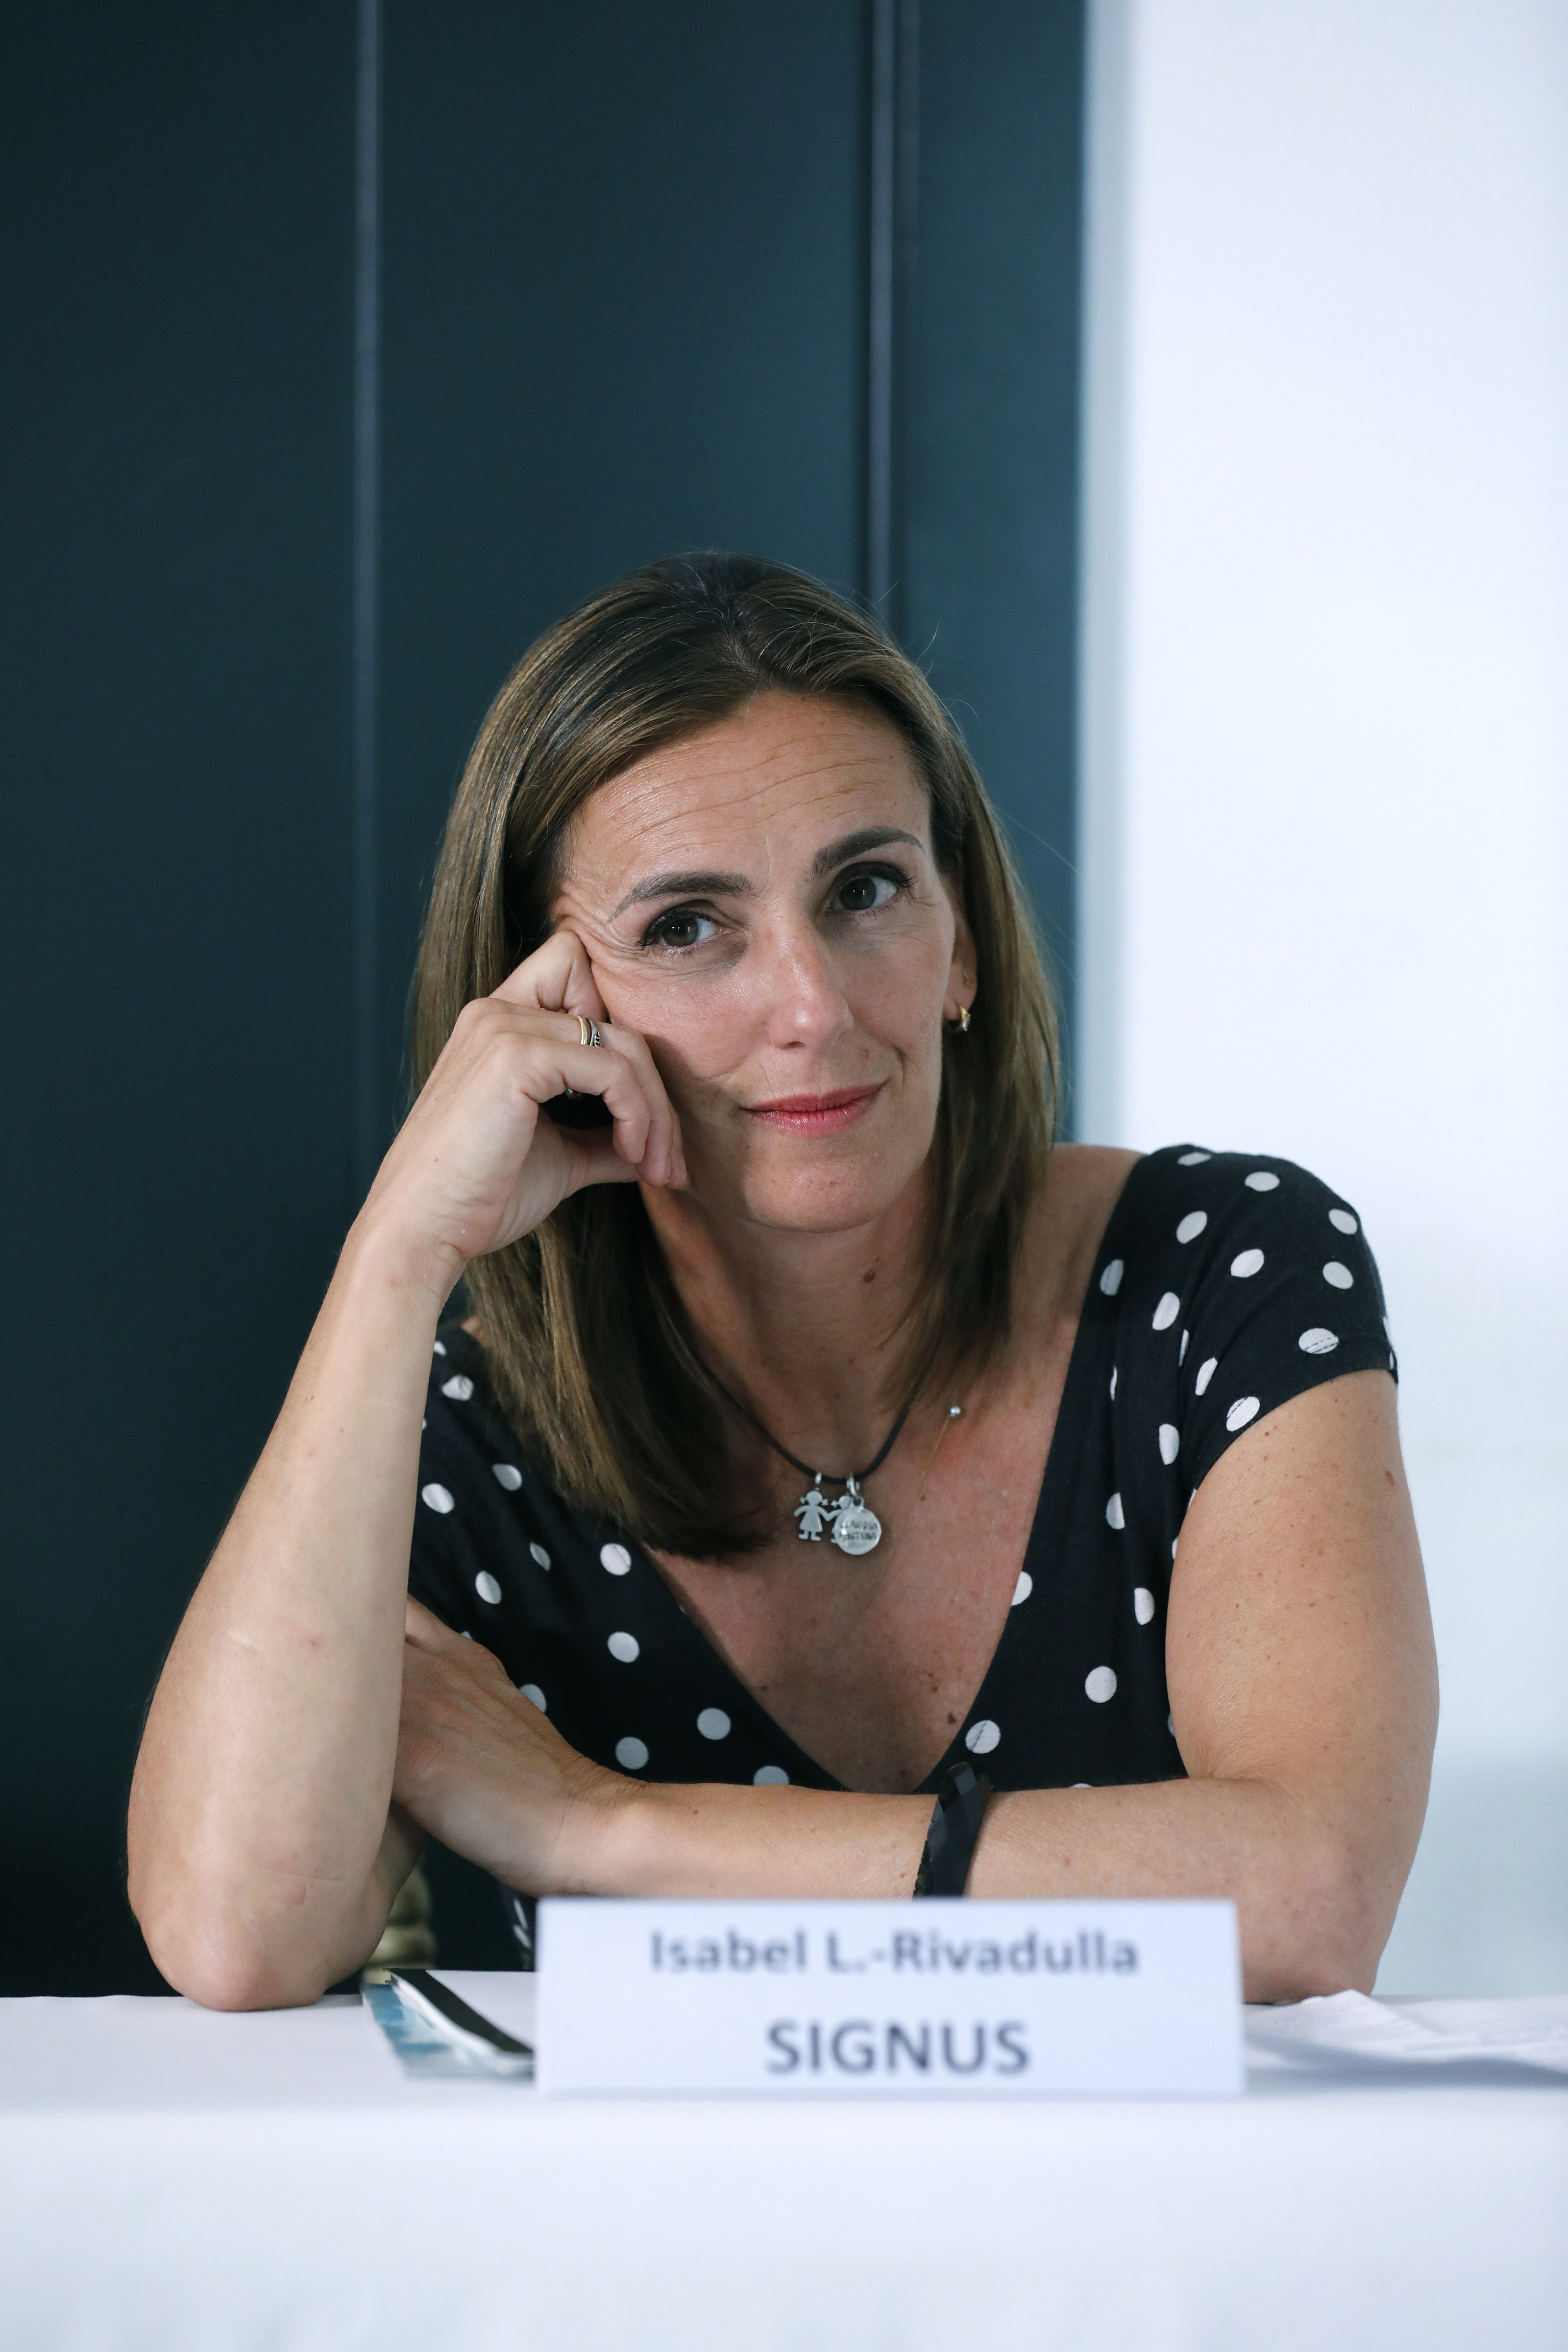 Isabel L.-Rivadulla Sández, directora de Comunicación y Marketing en SIGNUS Ecovalor y vicepresidenta de WAS (Women Action Sustainability).